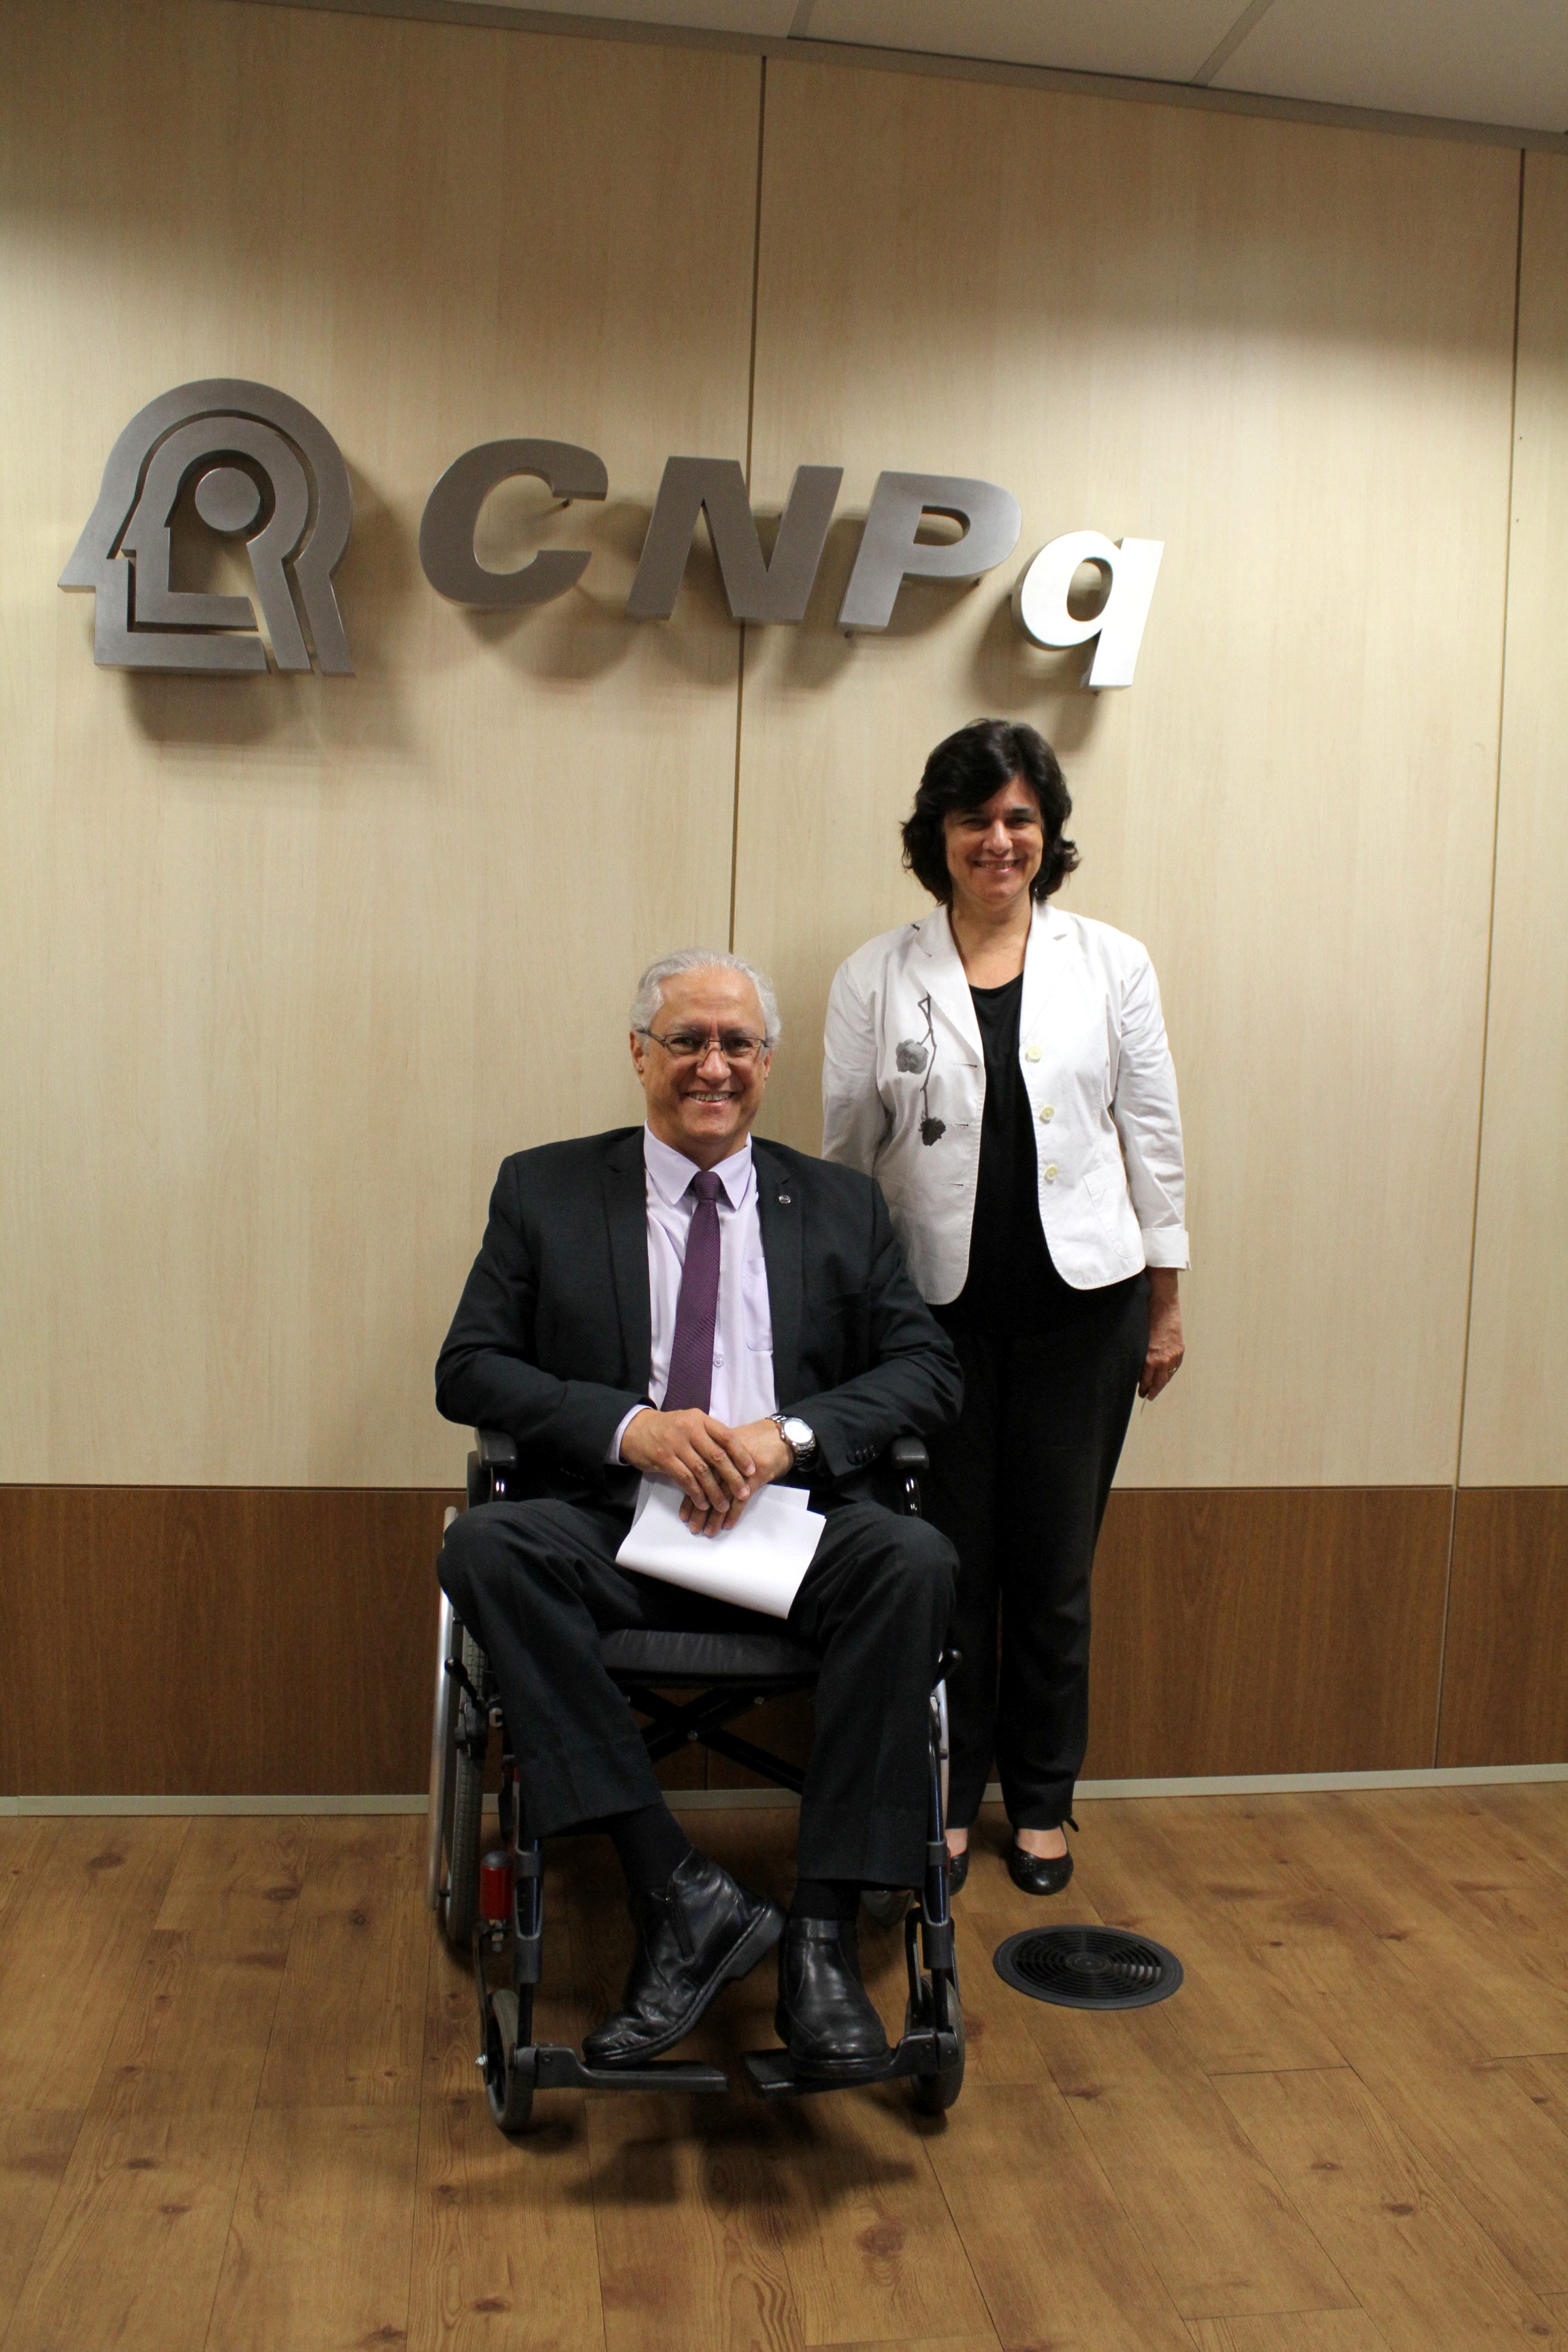  Assinatura de acordo CNPq/Fiocruz - Foto Marcelo Gondim